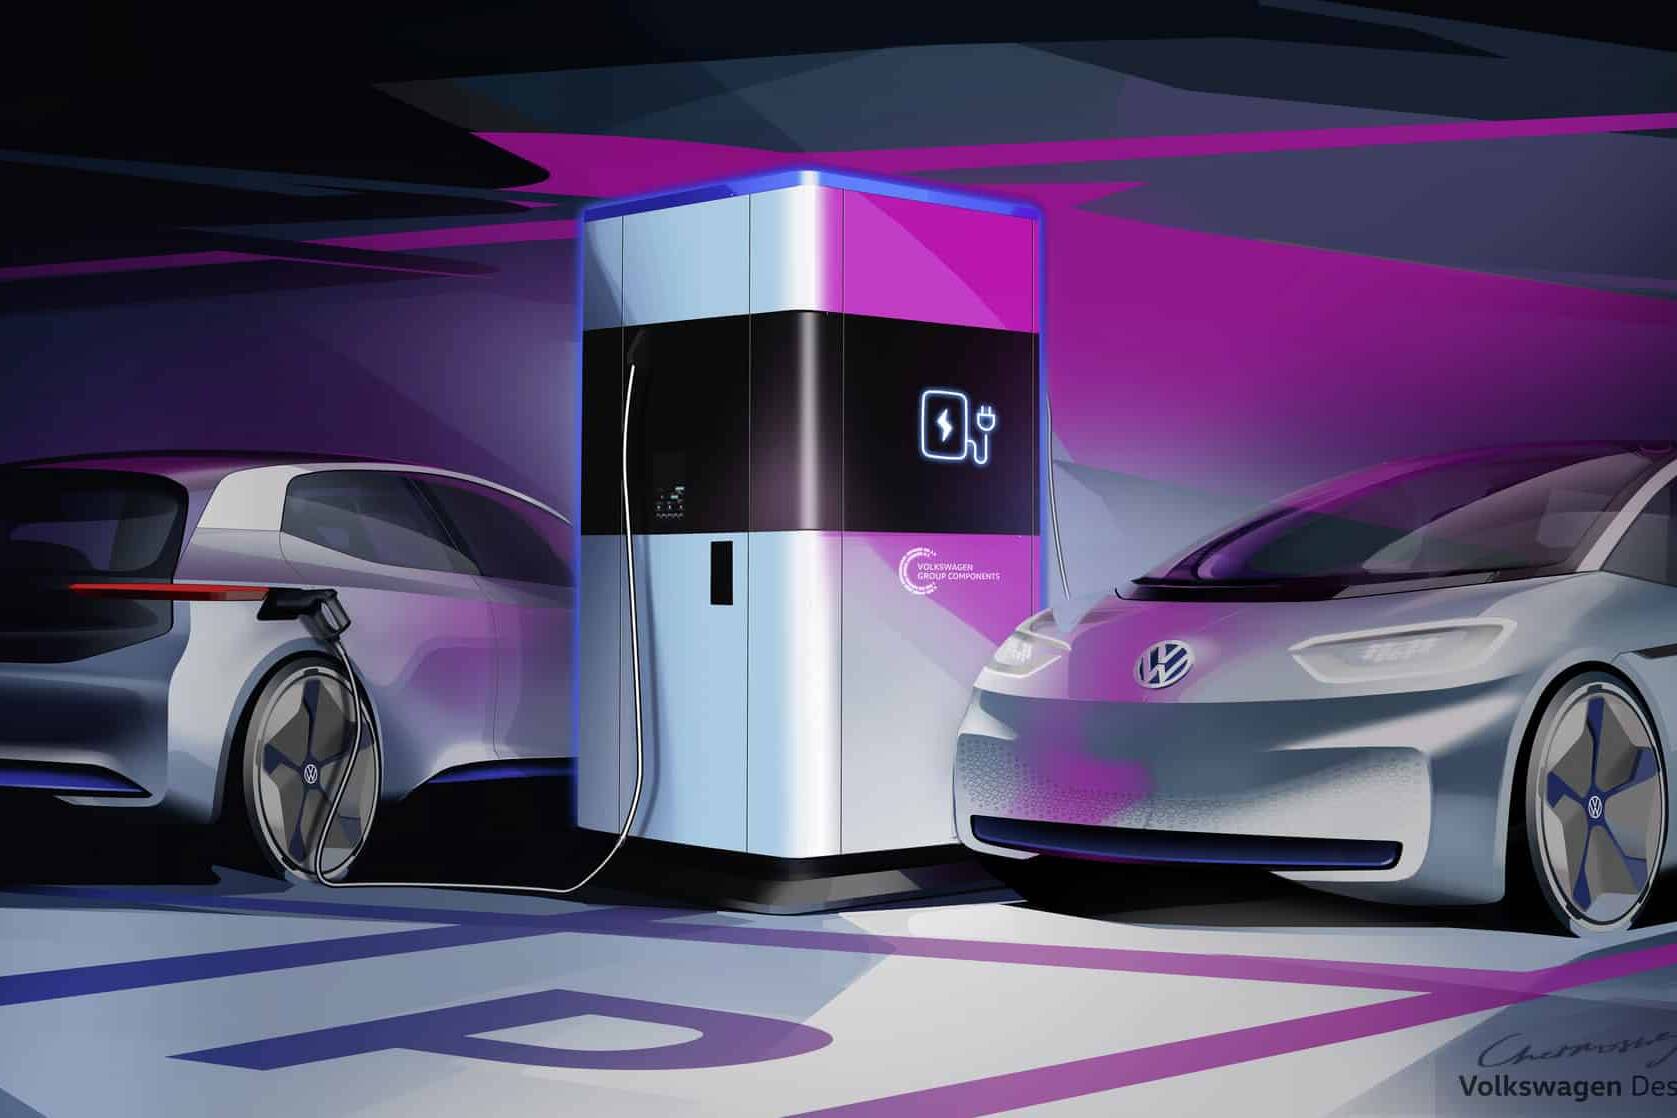 Powerbank für E-Autos – Die mobile Schnellladesäule von Volkswagen